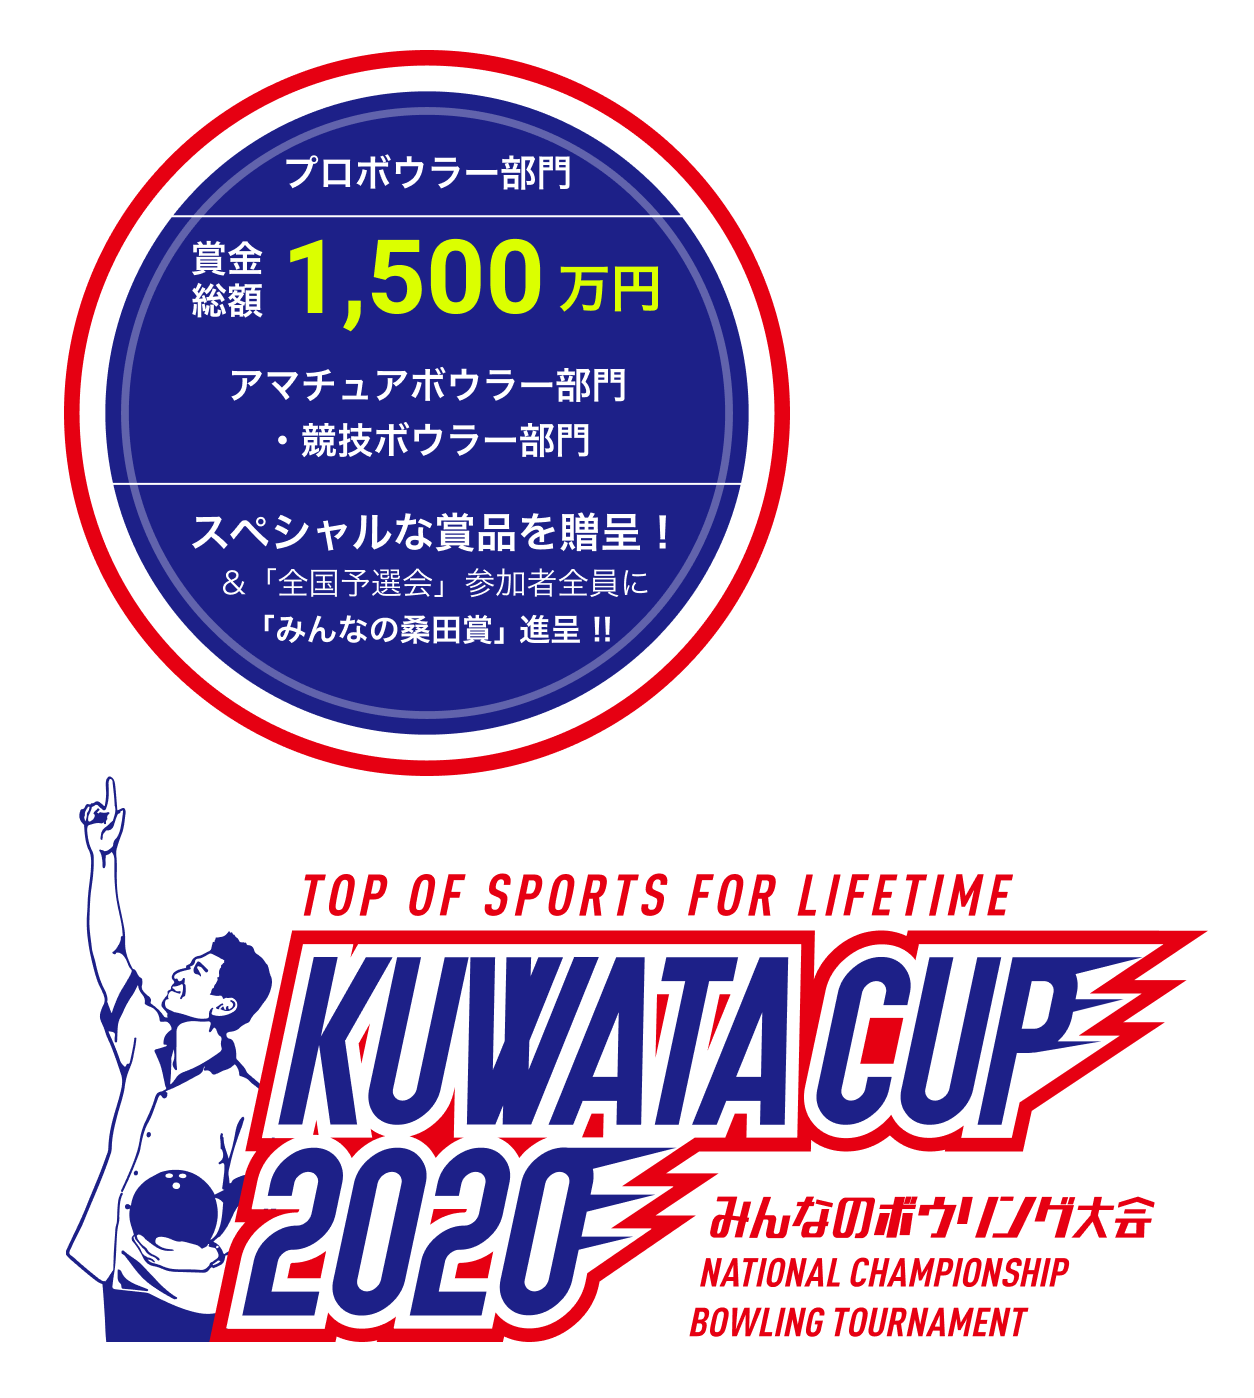 KUWATA CUP 2020 みんなのボウリング大会